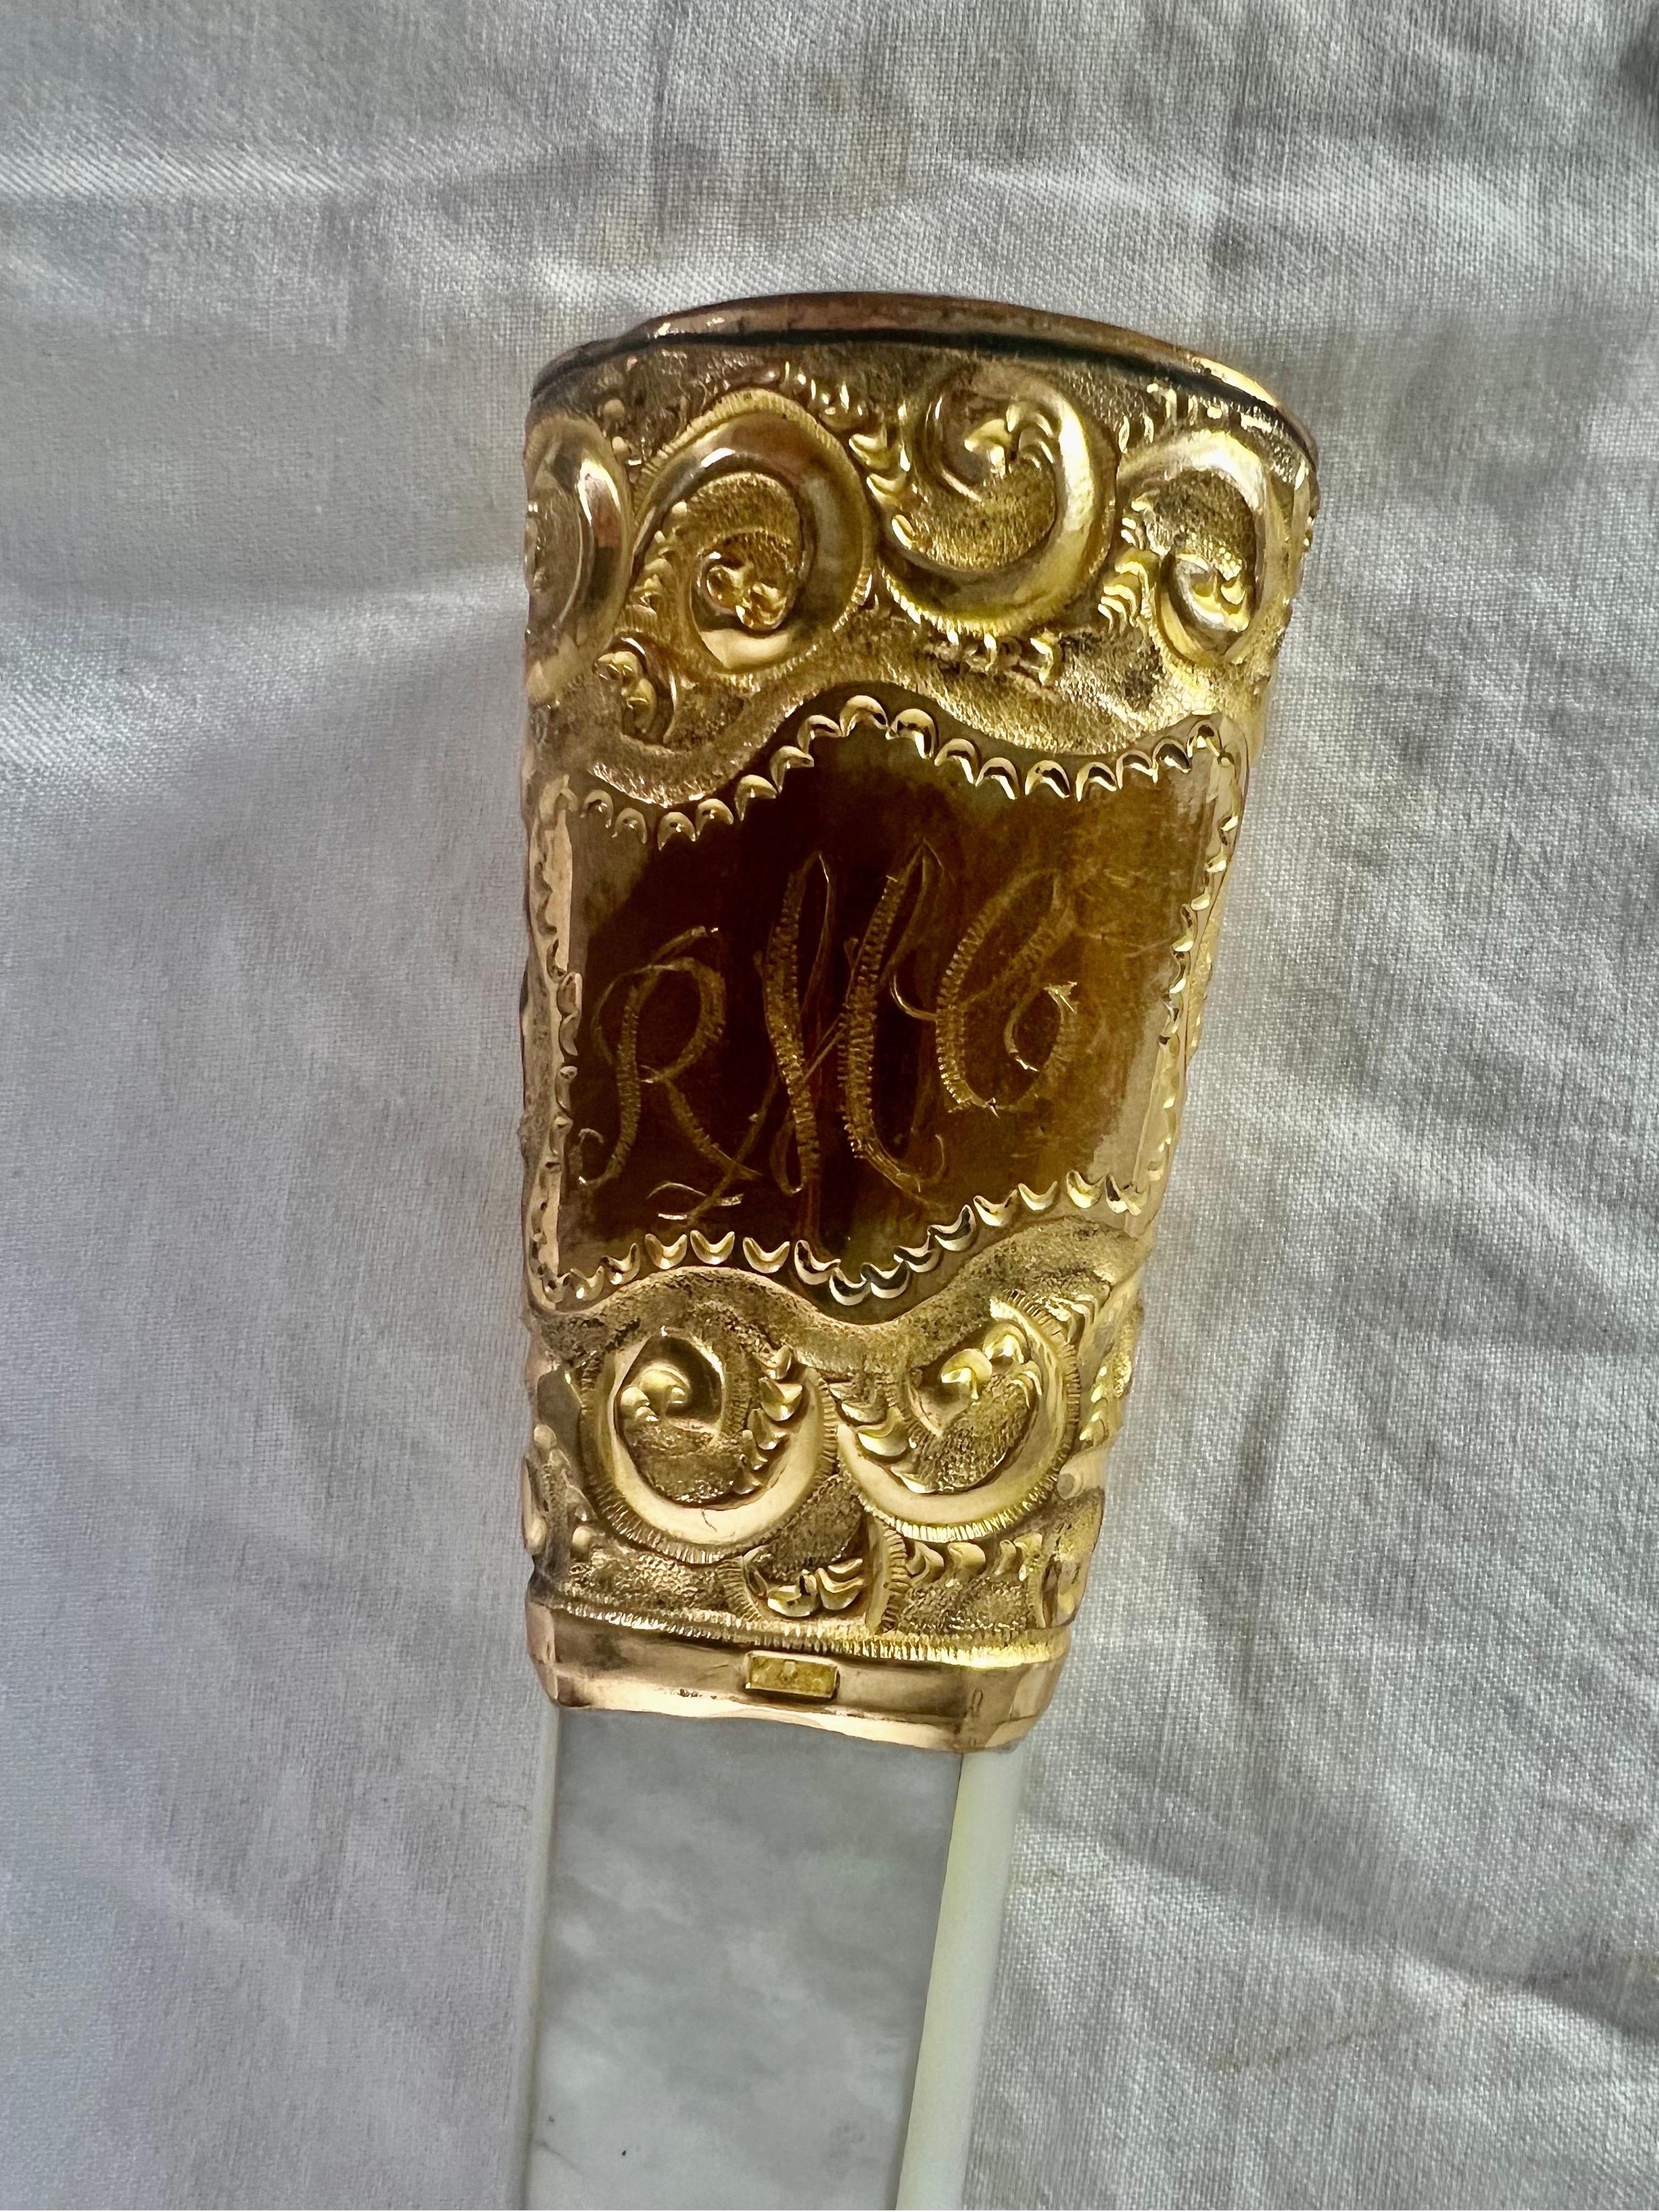 Ein von K&H aus einem viktorianischen Sonnenschirmgriff gefertigtes Vergrößerungsglas mit aufwändiger Perlmuttverzierung und goldfarbener Silberreplik.  Der Griff ist mit dem Monogramm 